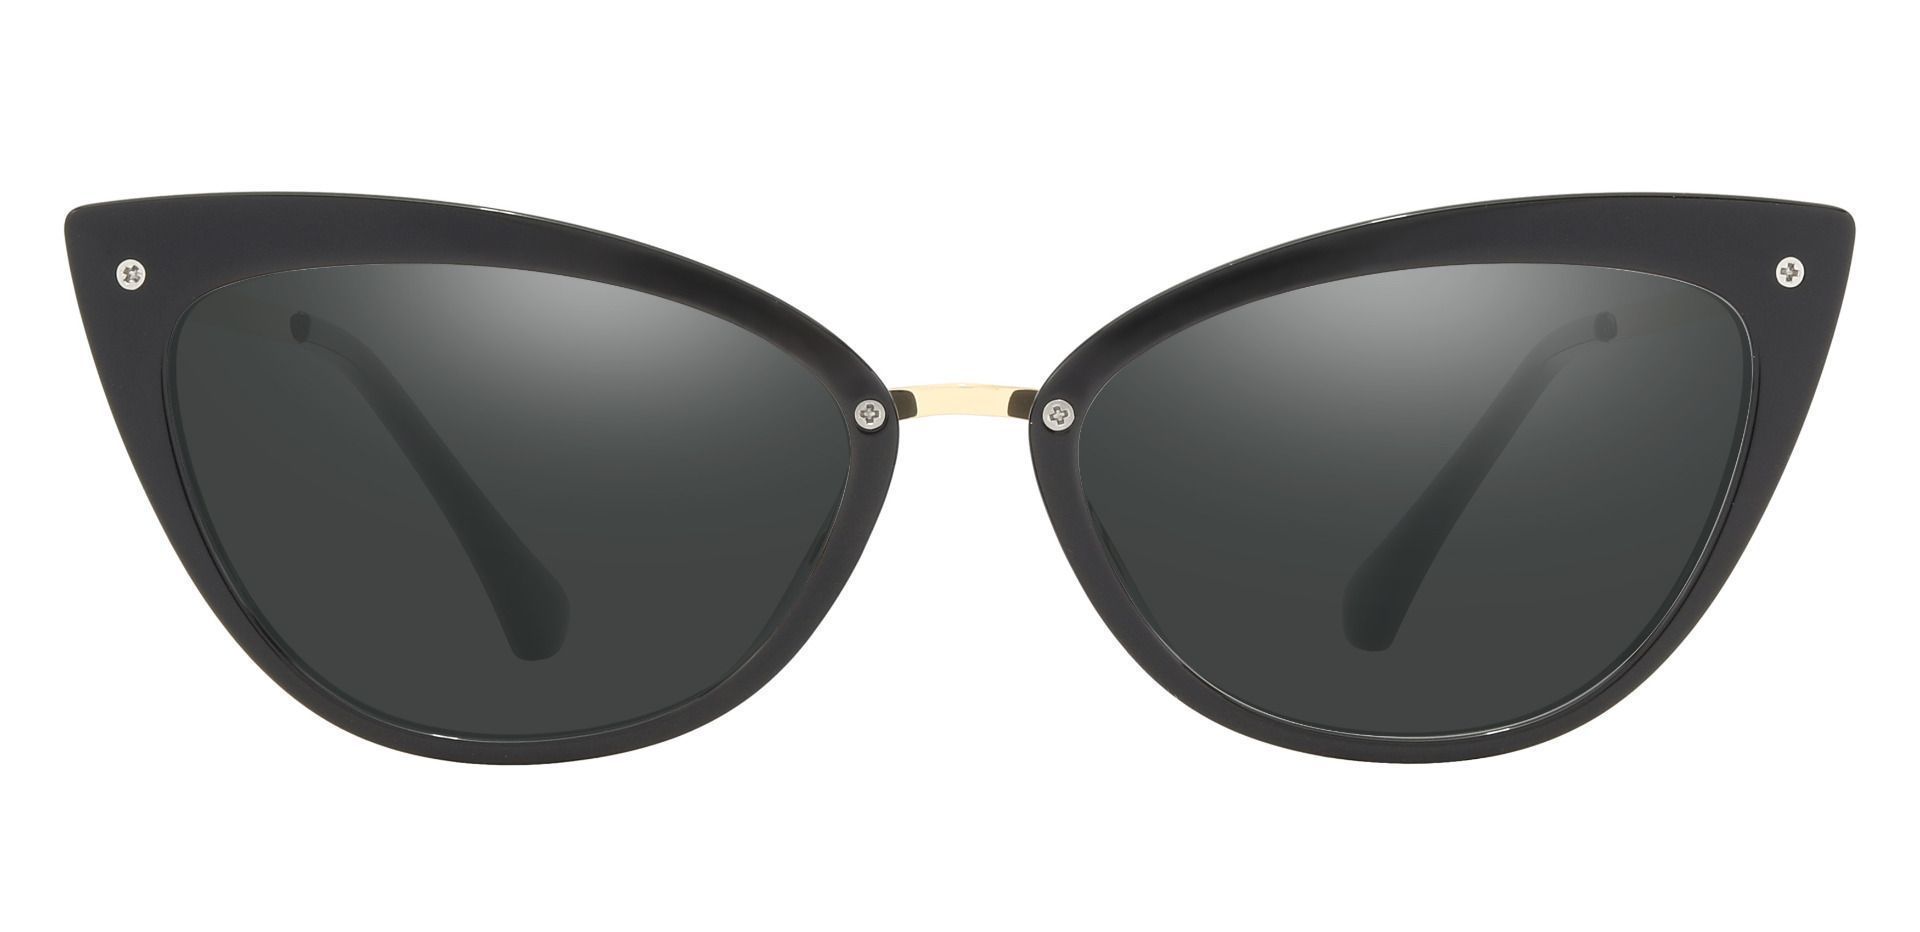 Glenda Cat Eye Prescription Sunglasses - Black Frame With Gray Lenses